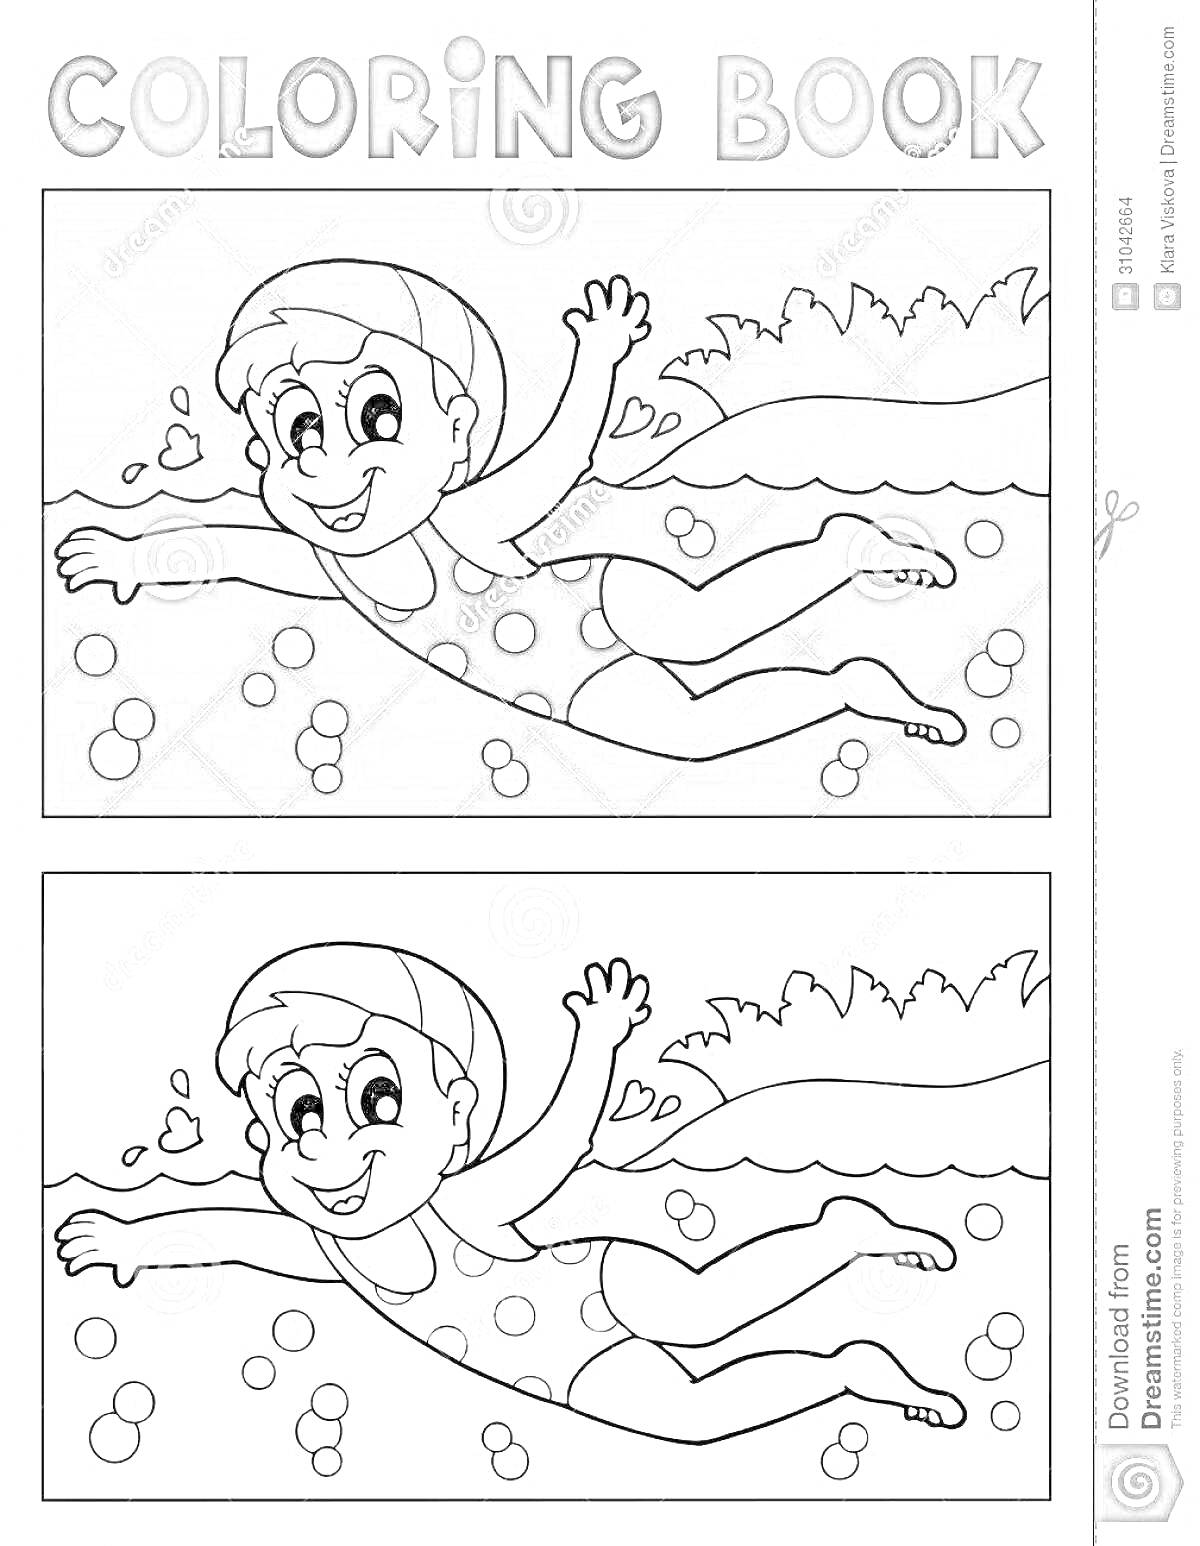 Раскраска Мальчик в плавательной шапочке и купальнике плывёт в реке, вокруг него пузыри и волны